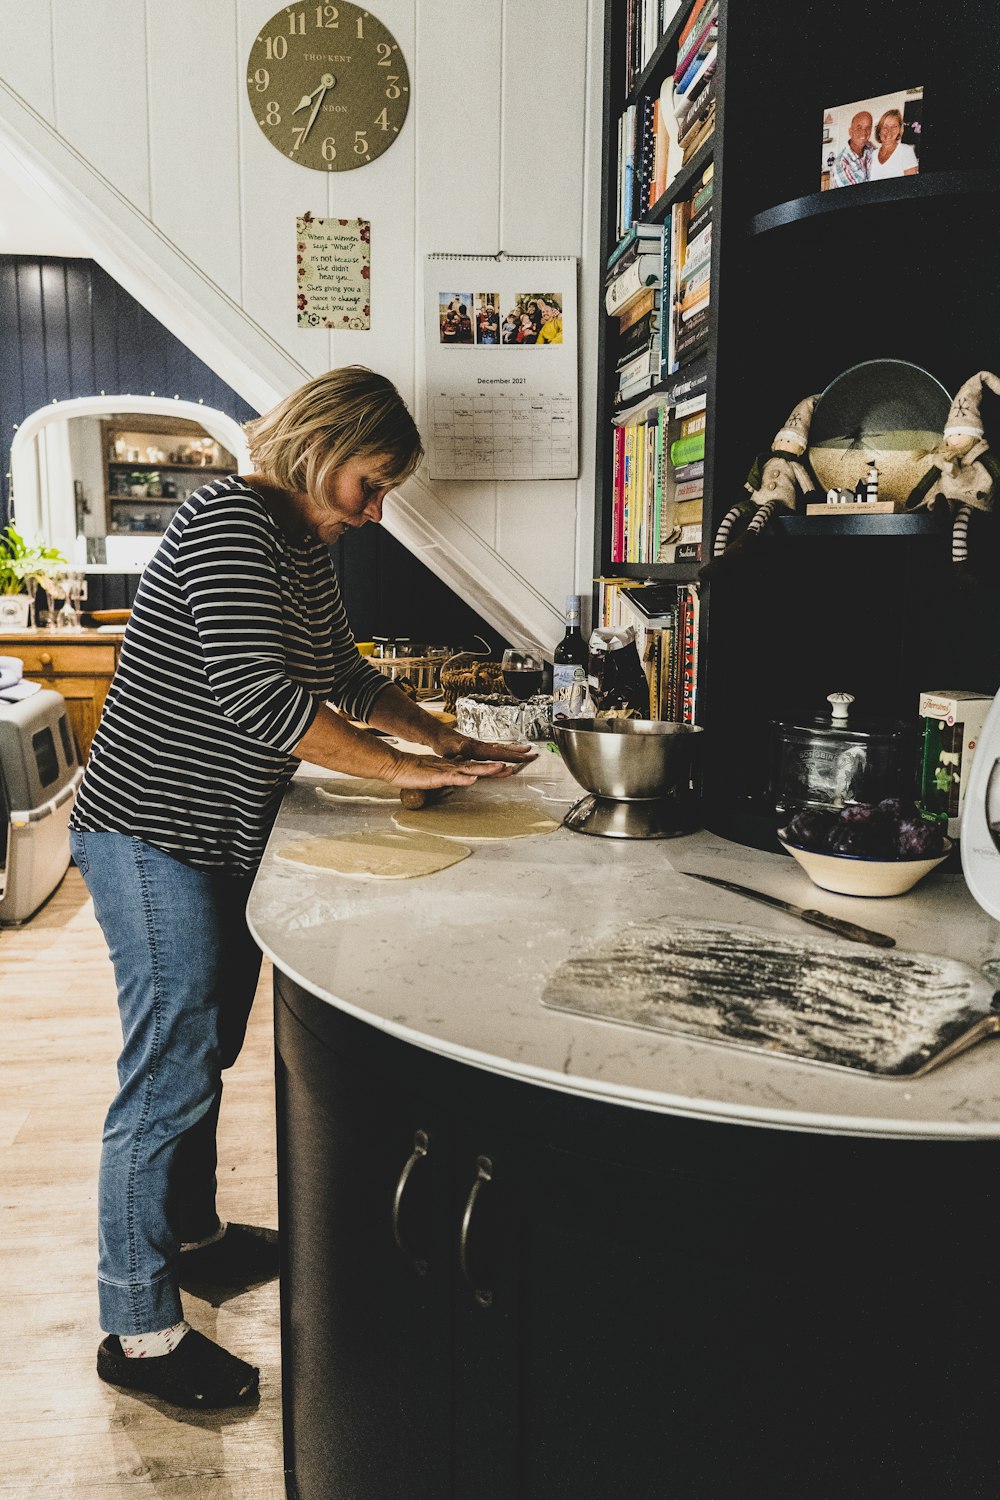 Una mujer parada en una cocina preparando comida